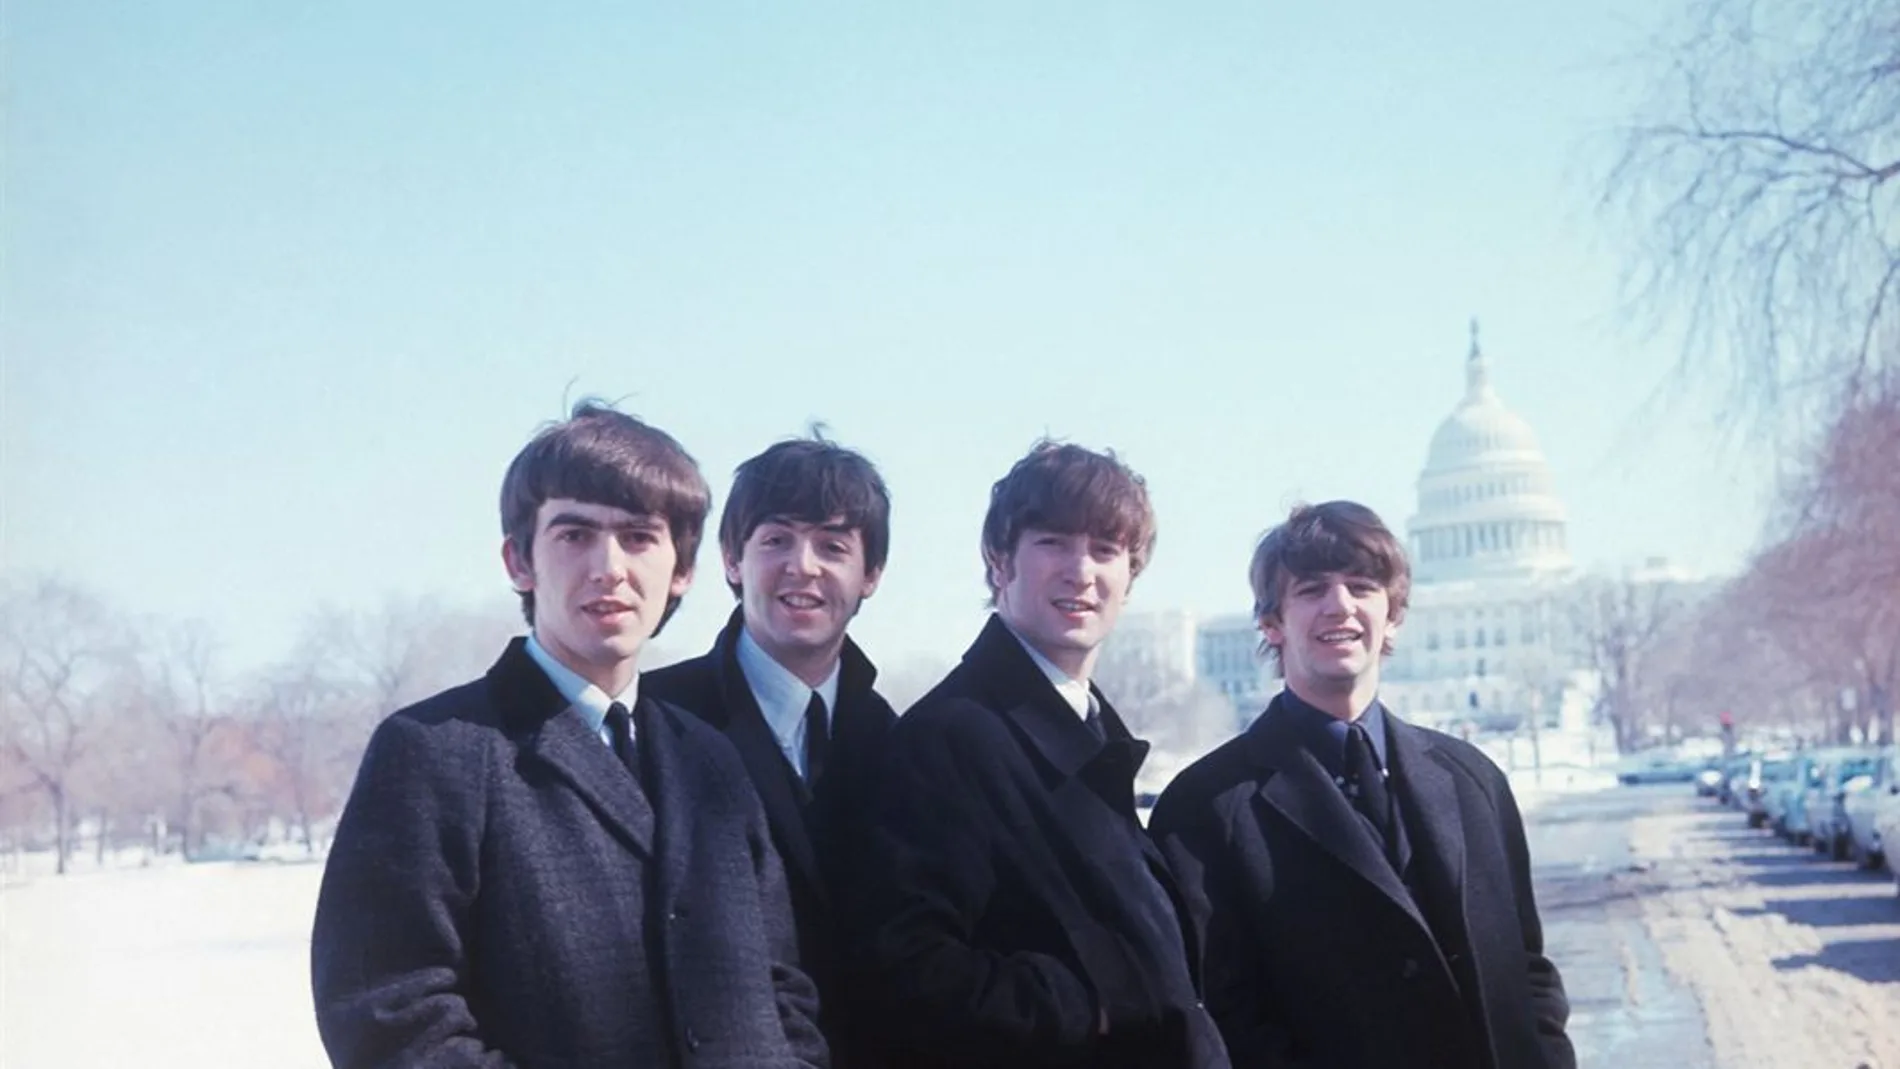 Los Beatles en el documental "Eight days a week"